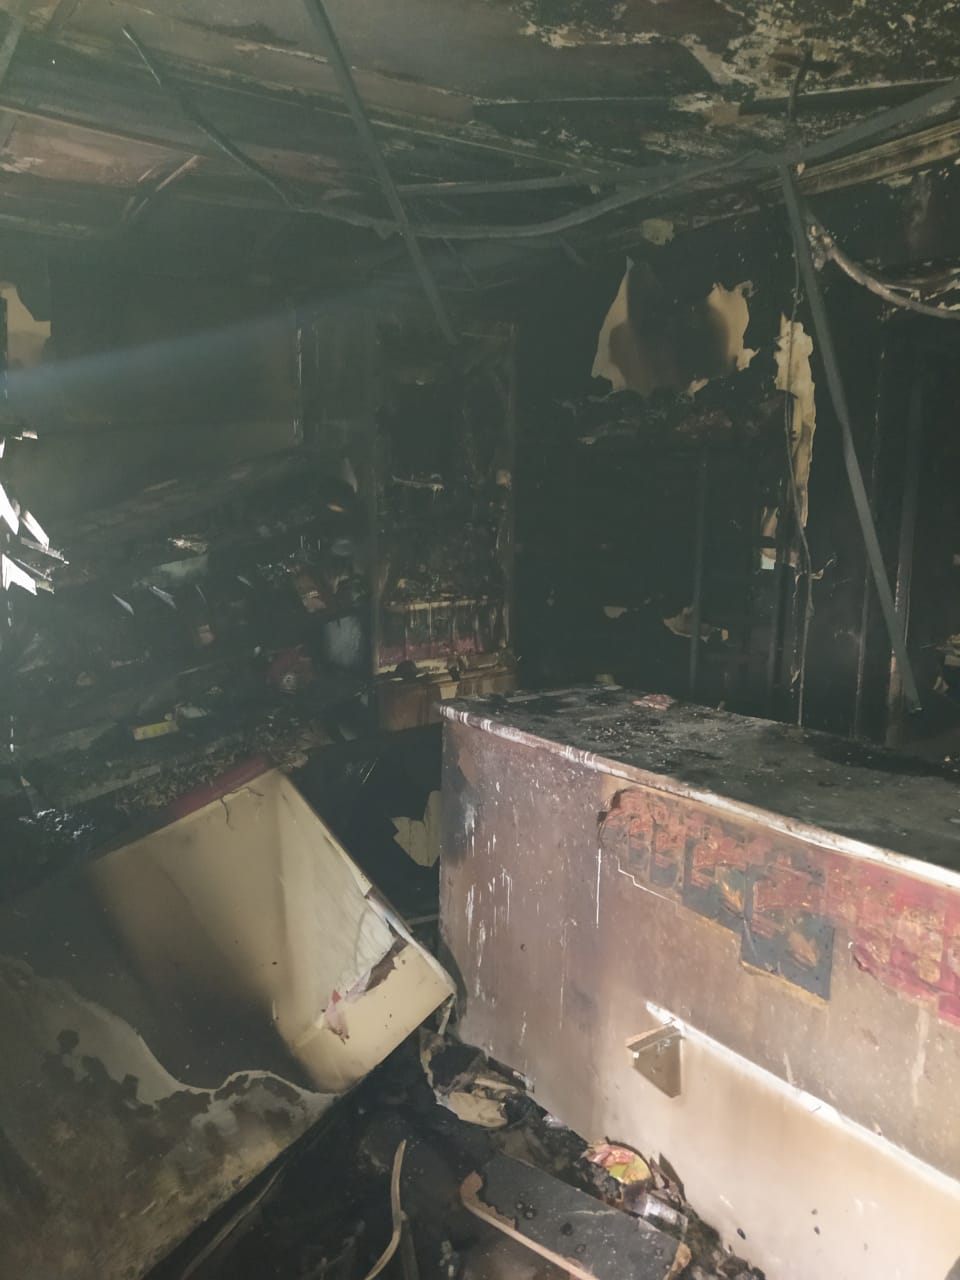 В Сернурском районе сгорел продуктовый магазин